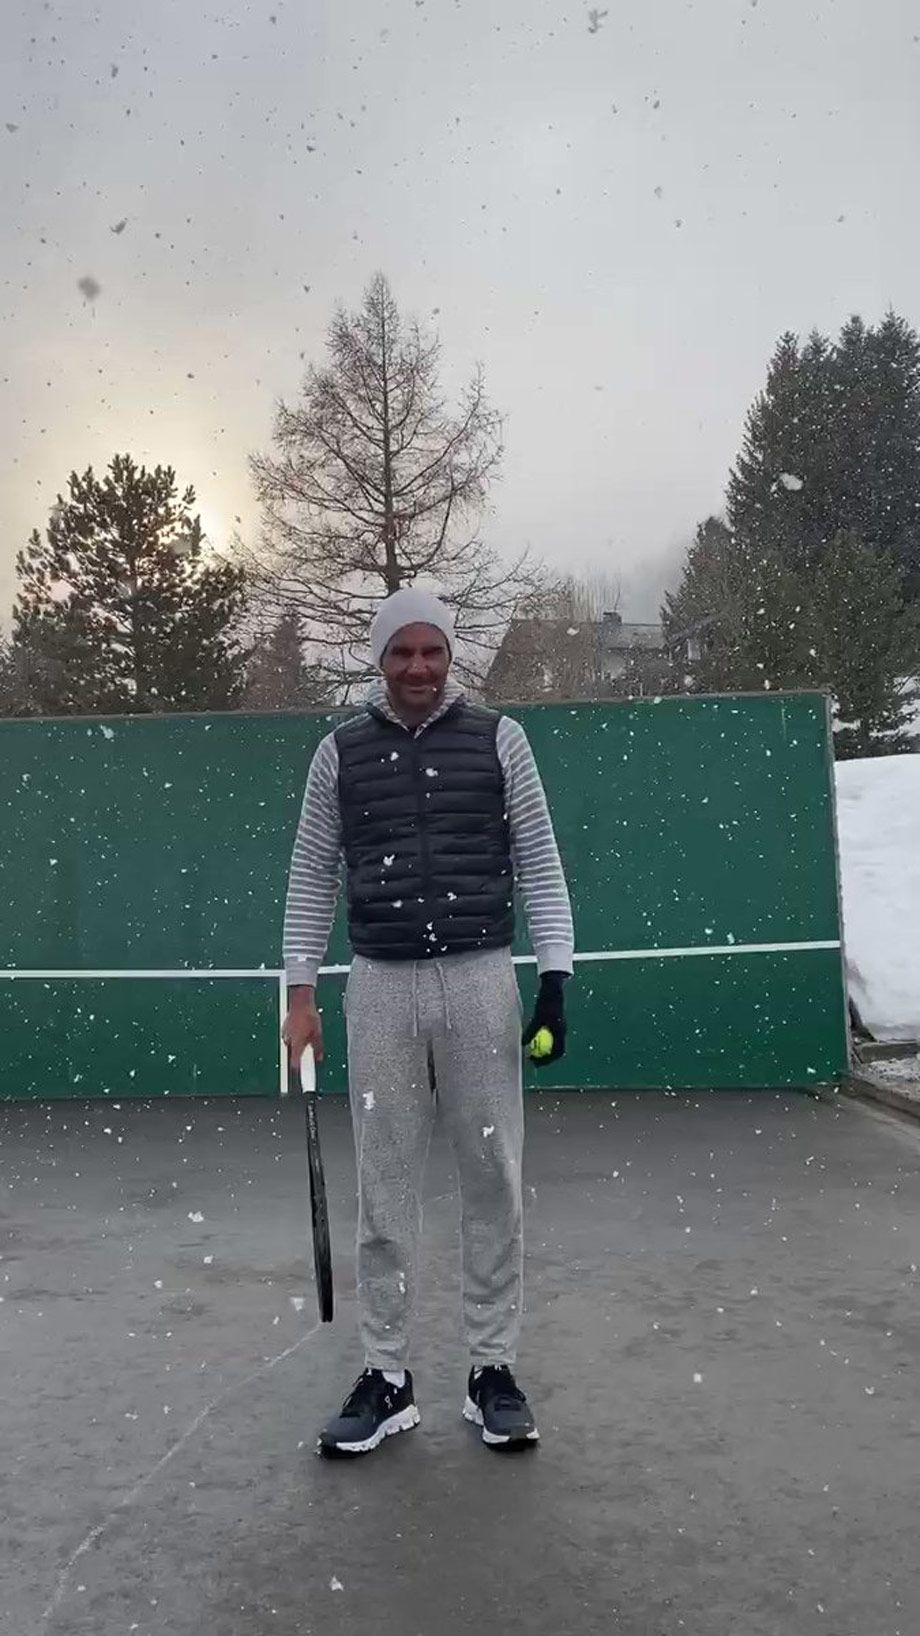 Роджер Федерер принимает термальные ванны и бегает по снегу, он планирует сыграть на Уимблдоне в следующем году